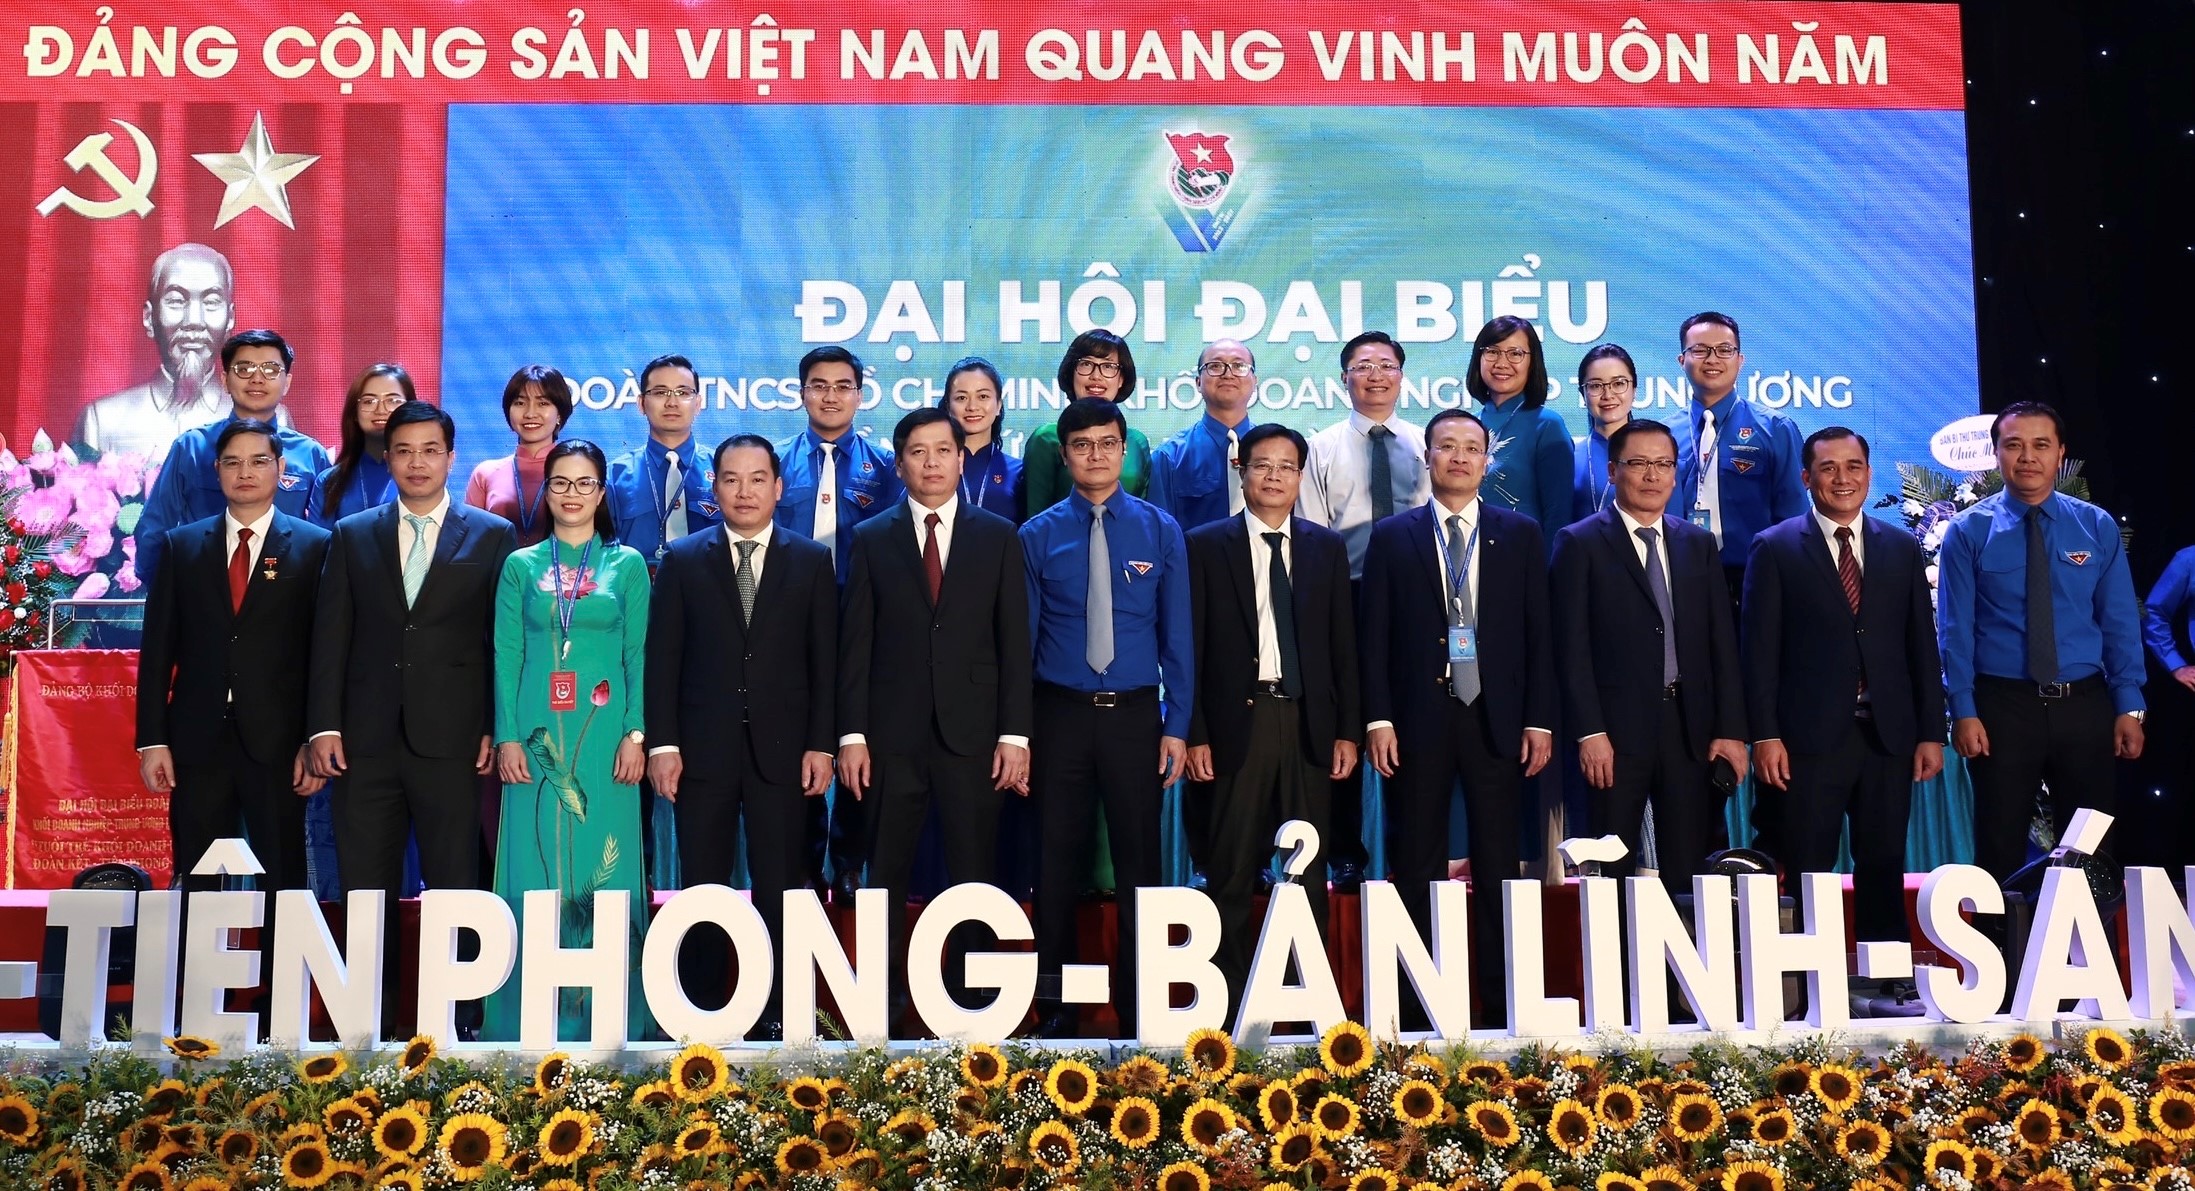 Đoàn đại biểu Đoàn thanh niên Vietcombank tham dự Đại hội Đoàn Khối Doanh nghiệp Trung ương